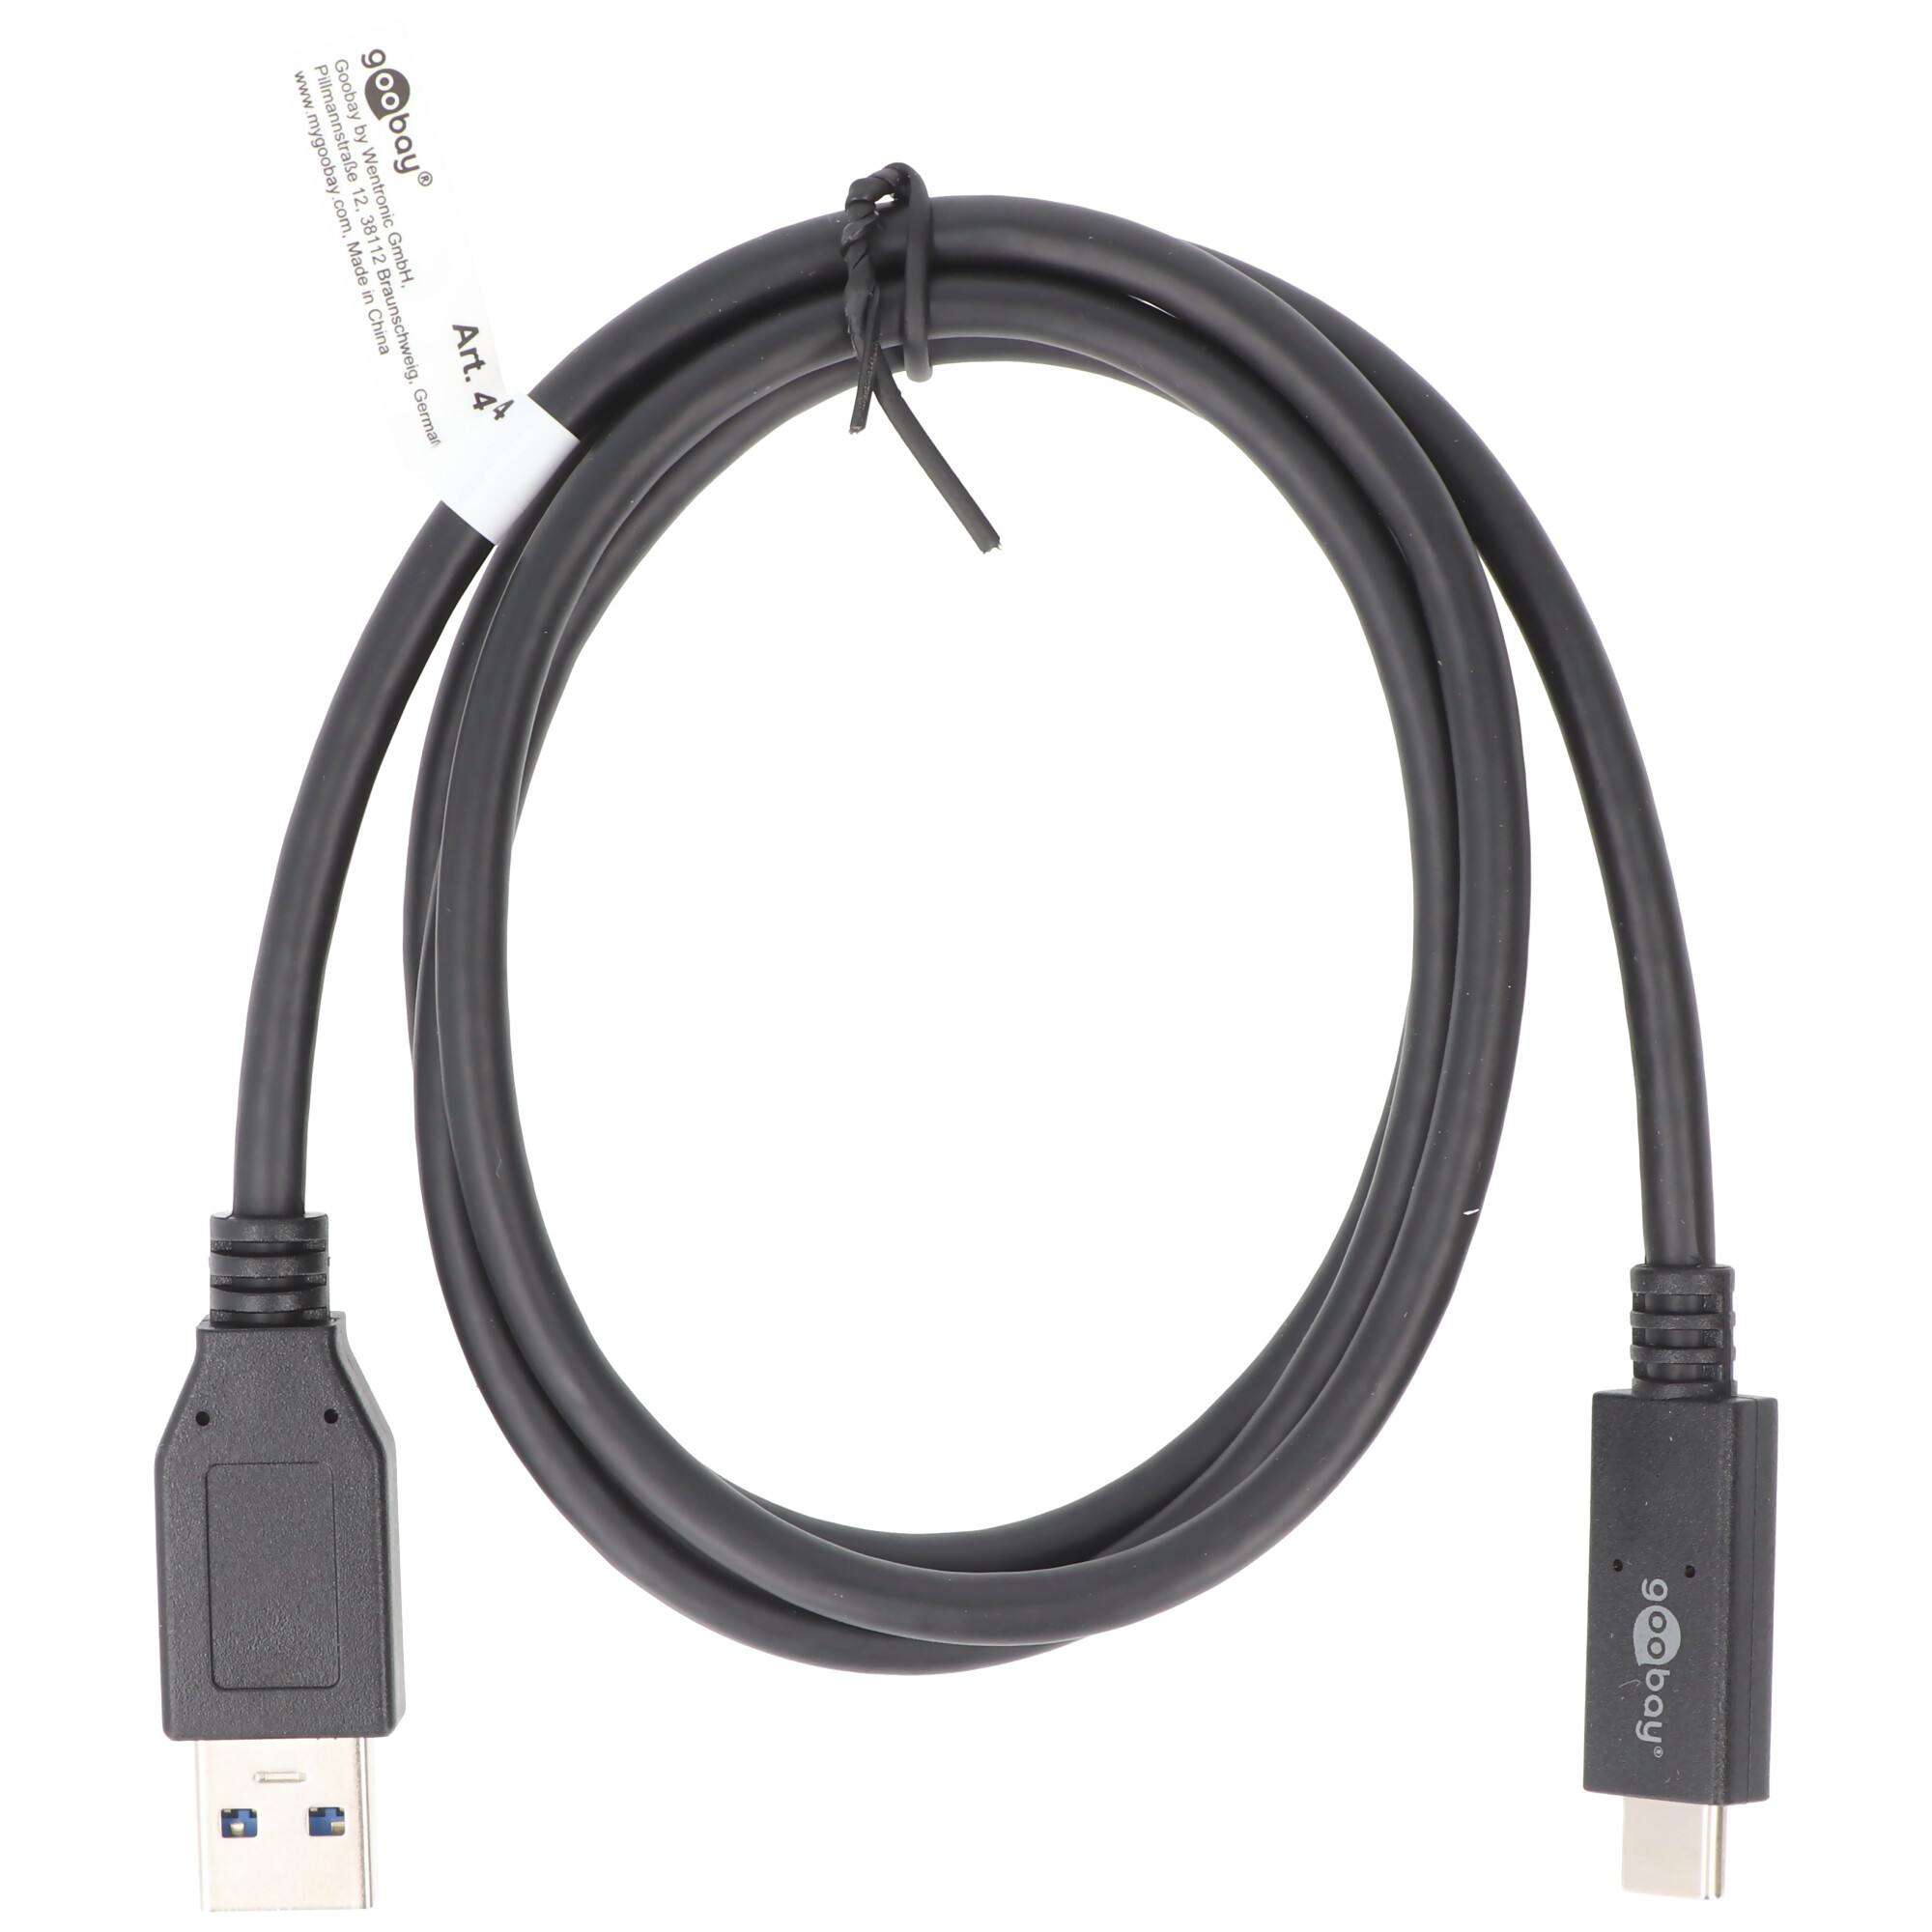 USB-C Lade- und Synchronisationskabel USB 3.1 Generation 2 für alle Geräte mit USB-C Anschluss, 1 Meter schwarz, 3A